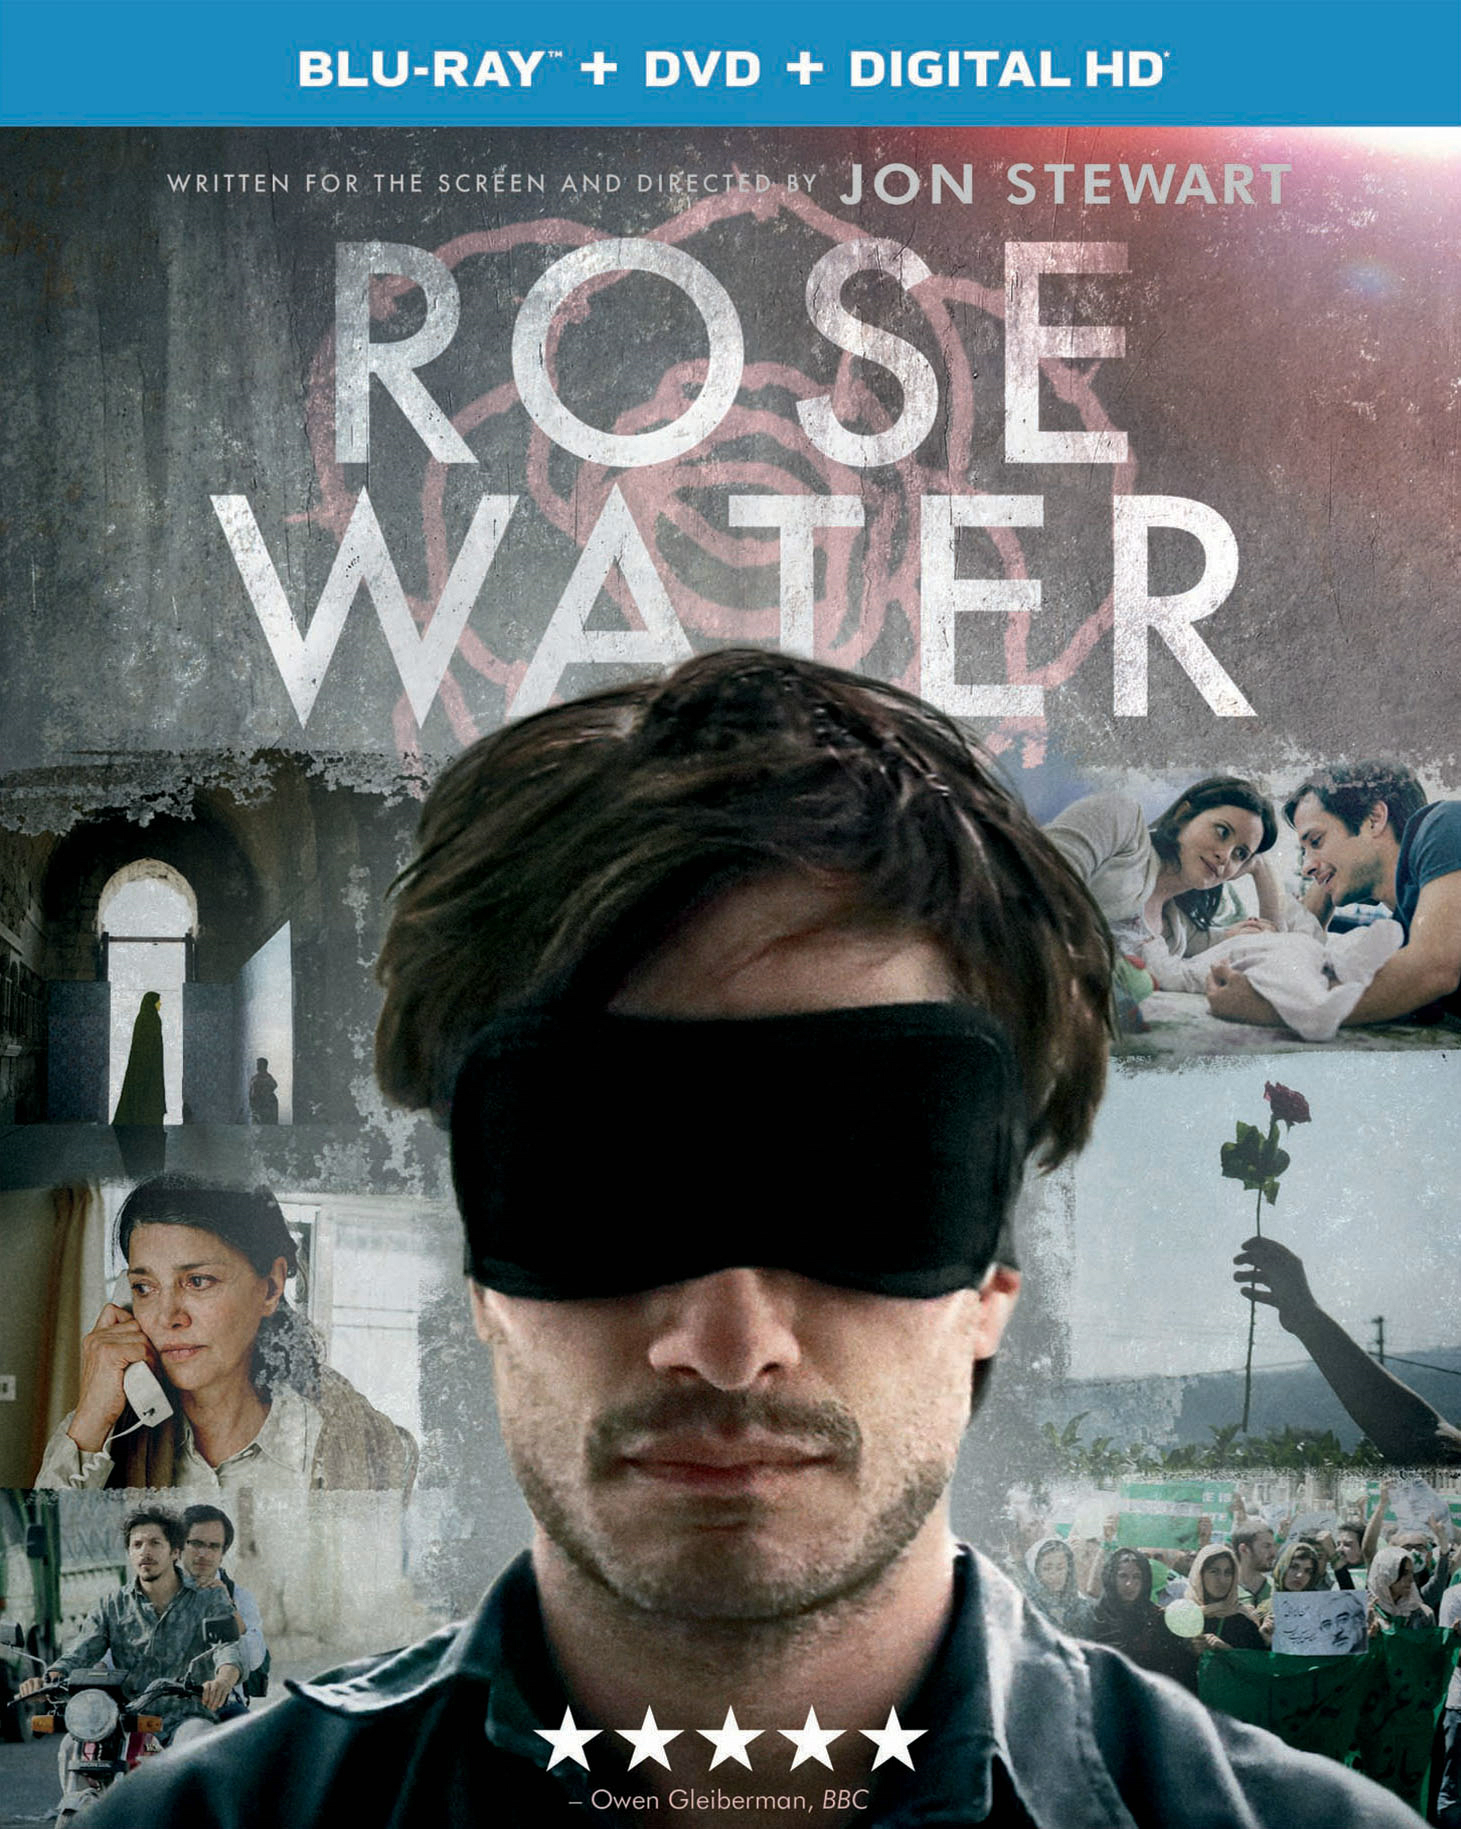 Rosewater (DVD) - Blu-ray [ 2014 ]  - Drama Movies On Blu-ray - Movies On GRUV